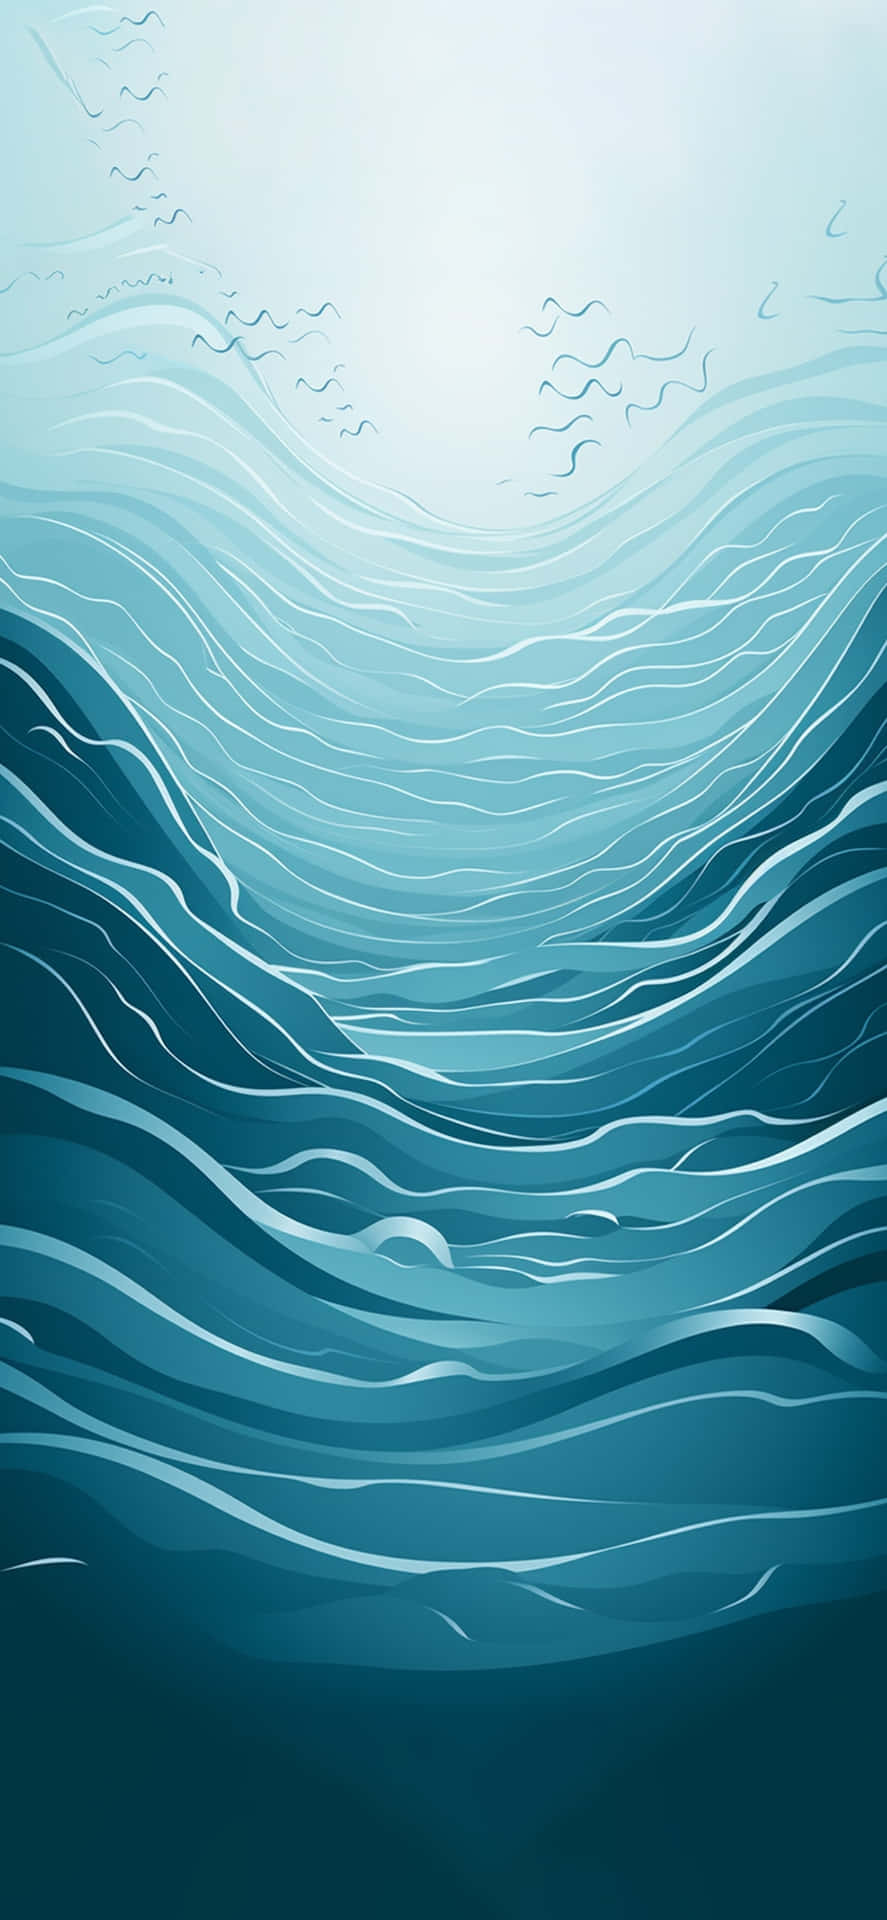 Abstract Underwater Scene Wallpaper